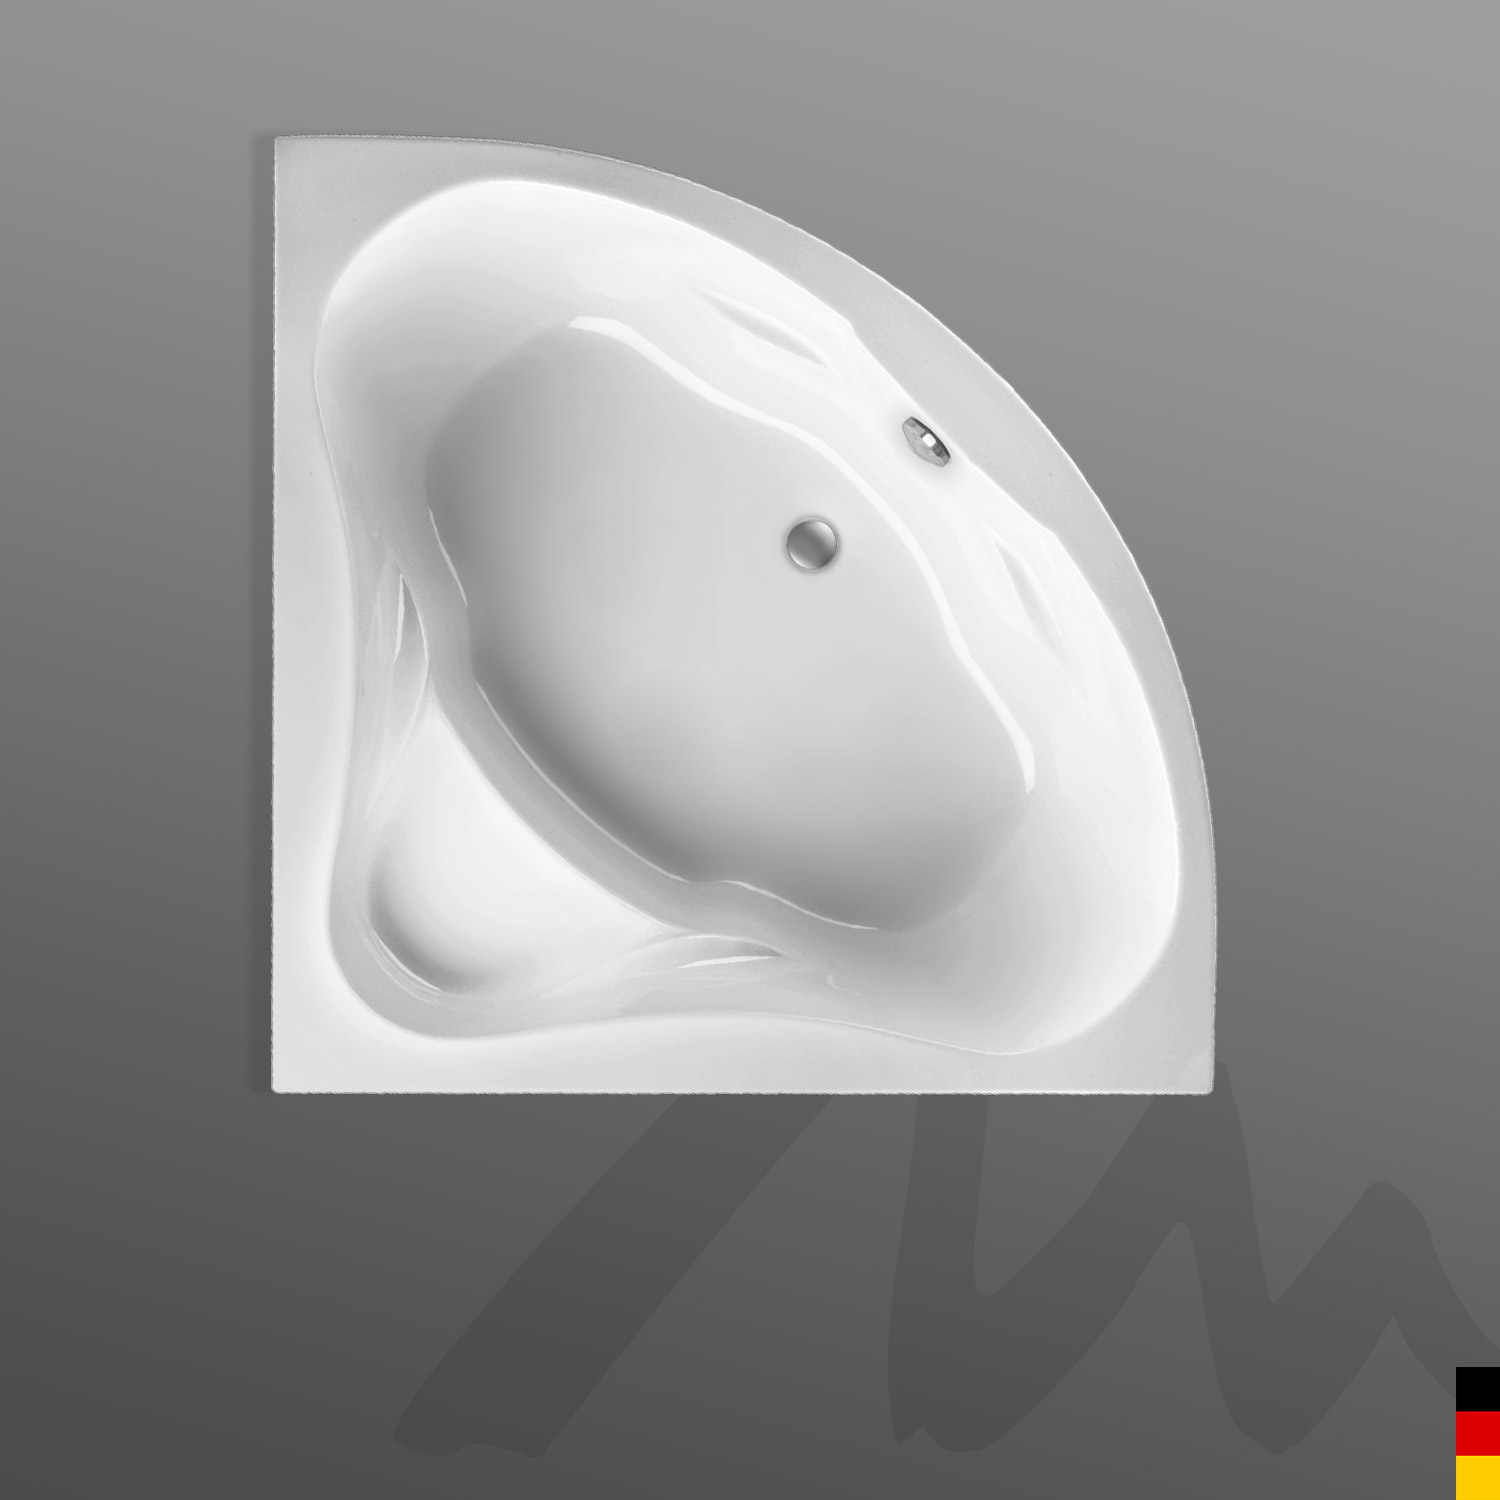 Mauersberger Badewanne Eck Berlandi mit Schürze/Panel140x140x46cm Farbe:weiß